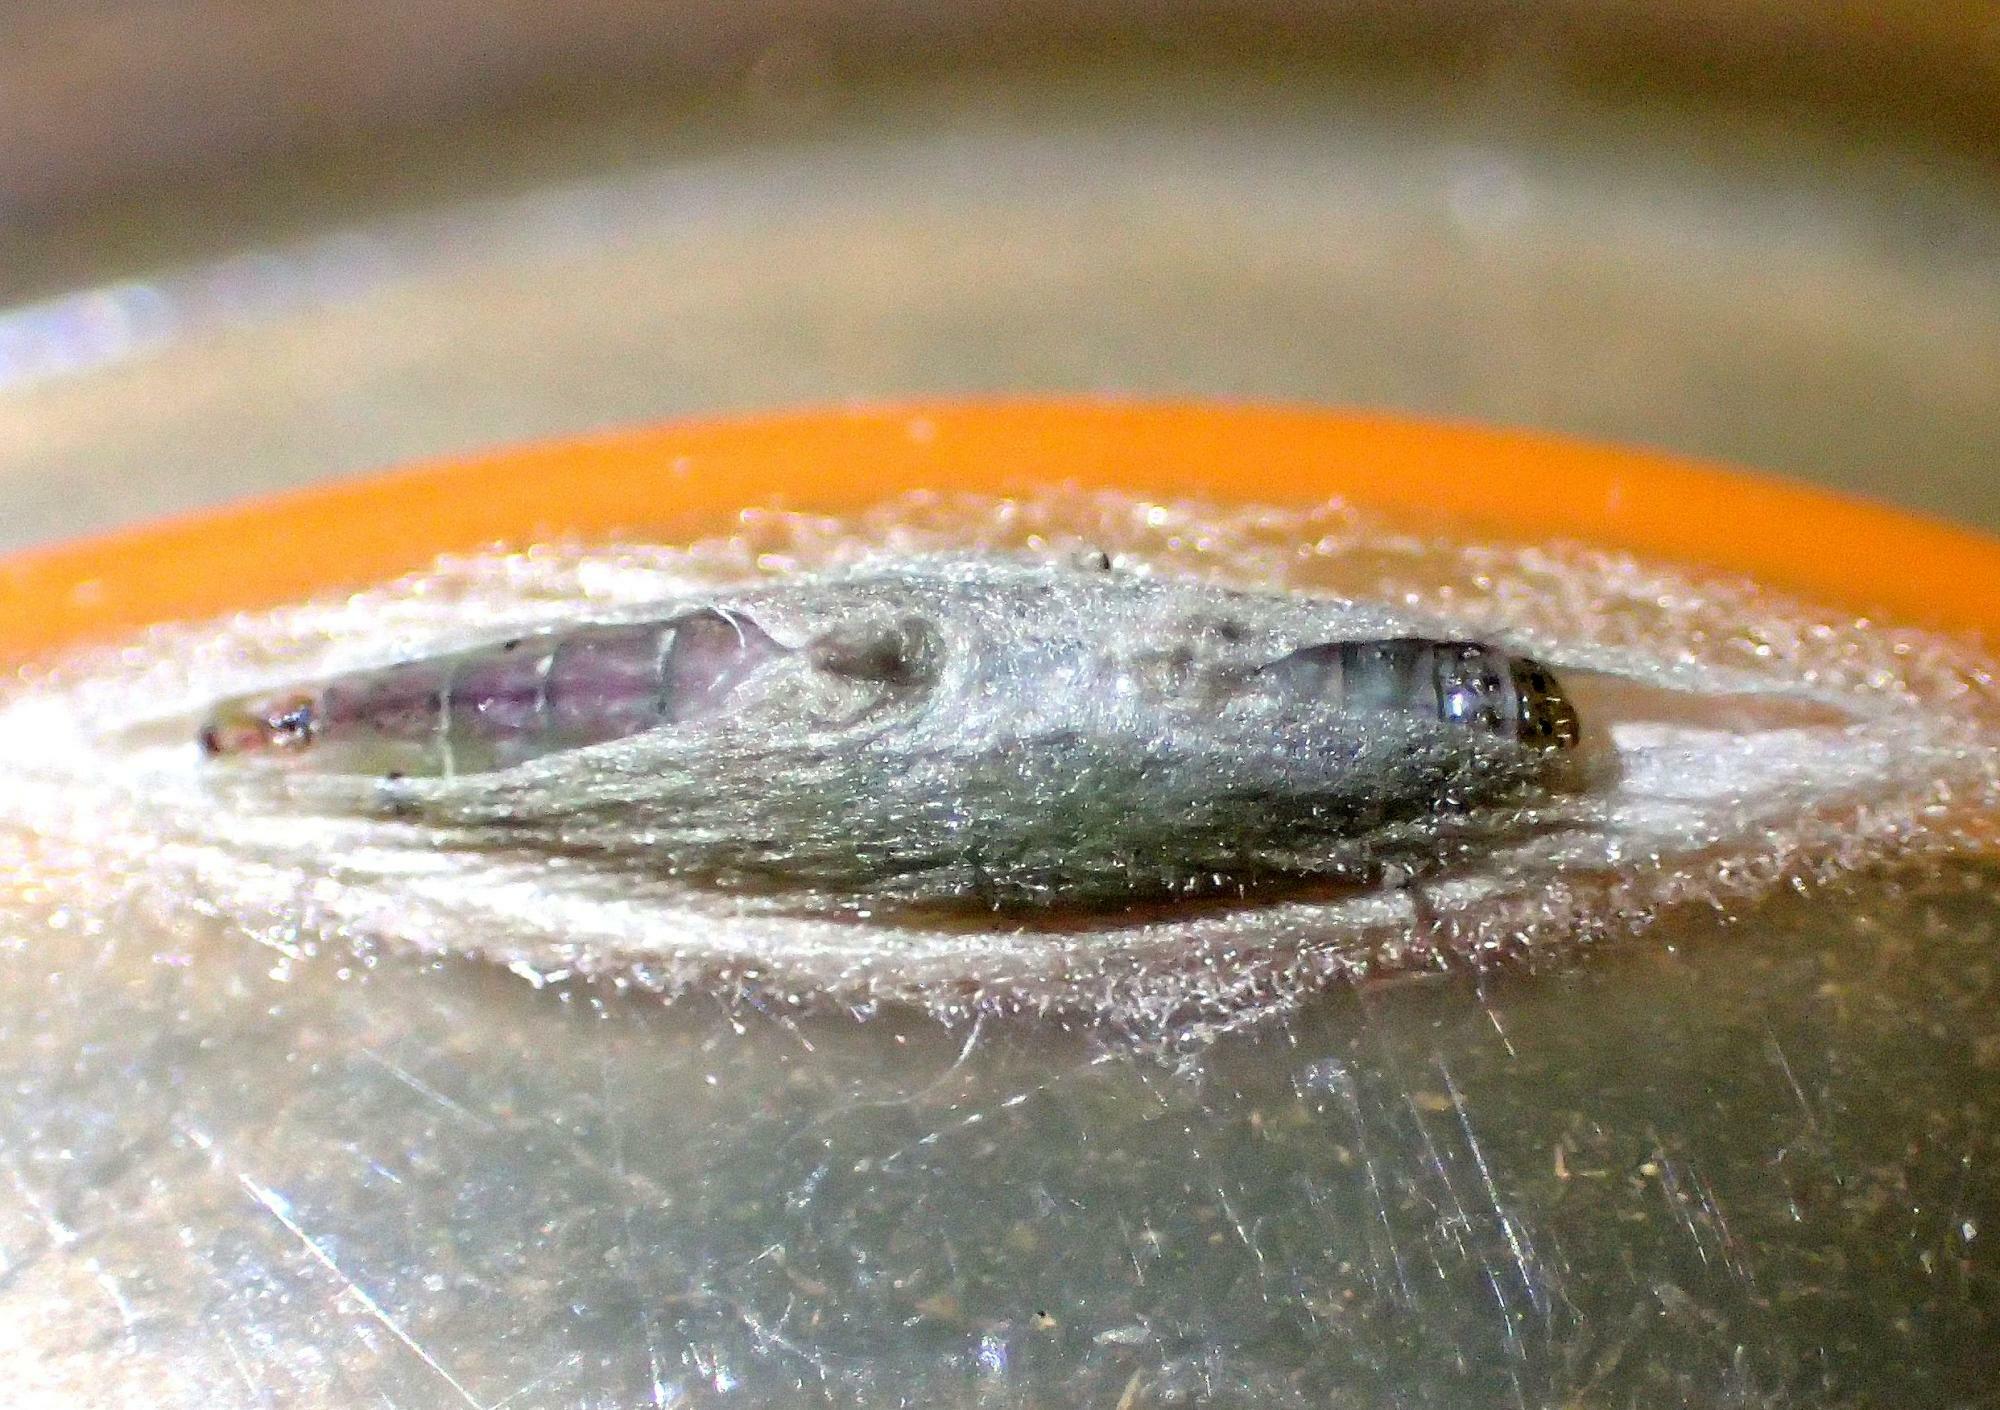 繭を作成中の幼虫。すでにツインピークの元が作られていることが分かる。最後は尖ったお尻を突き上げてピークを完成させるようで、たまにピーク付近に蛹の尻が突き出ていることがある。